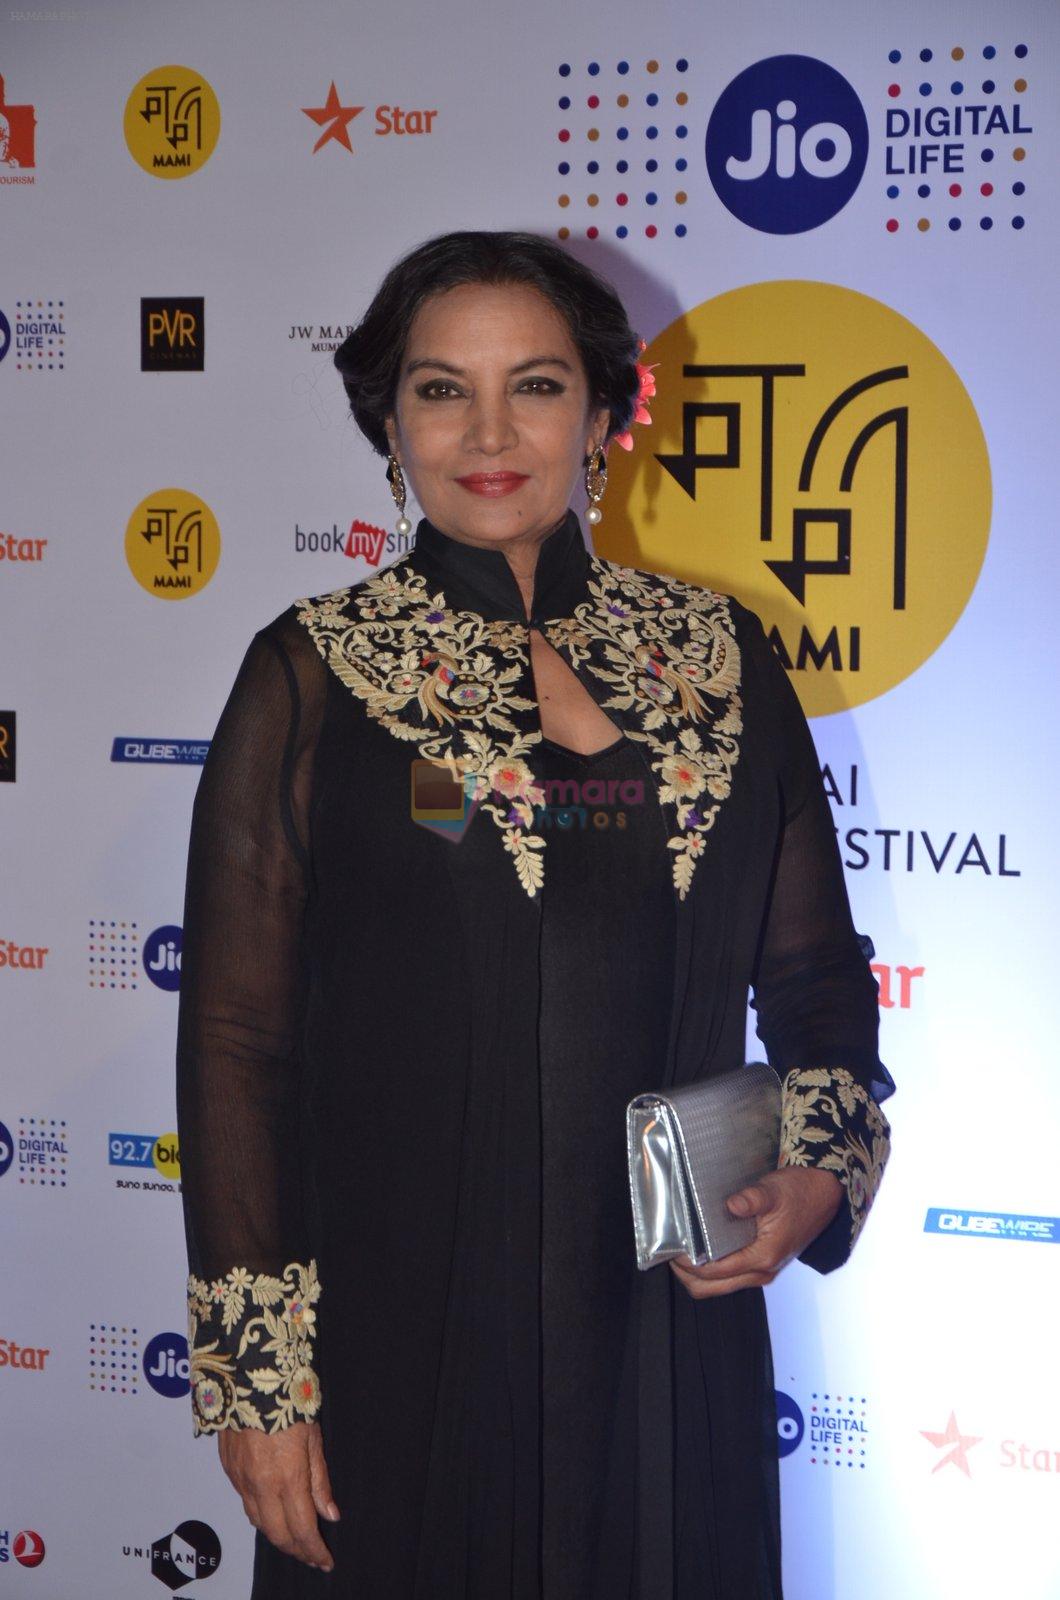 Shabana Azmi at MAMI Film Festival 2016 on 20th Oct 2016